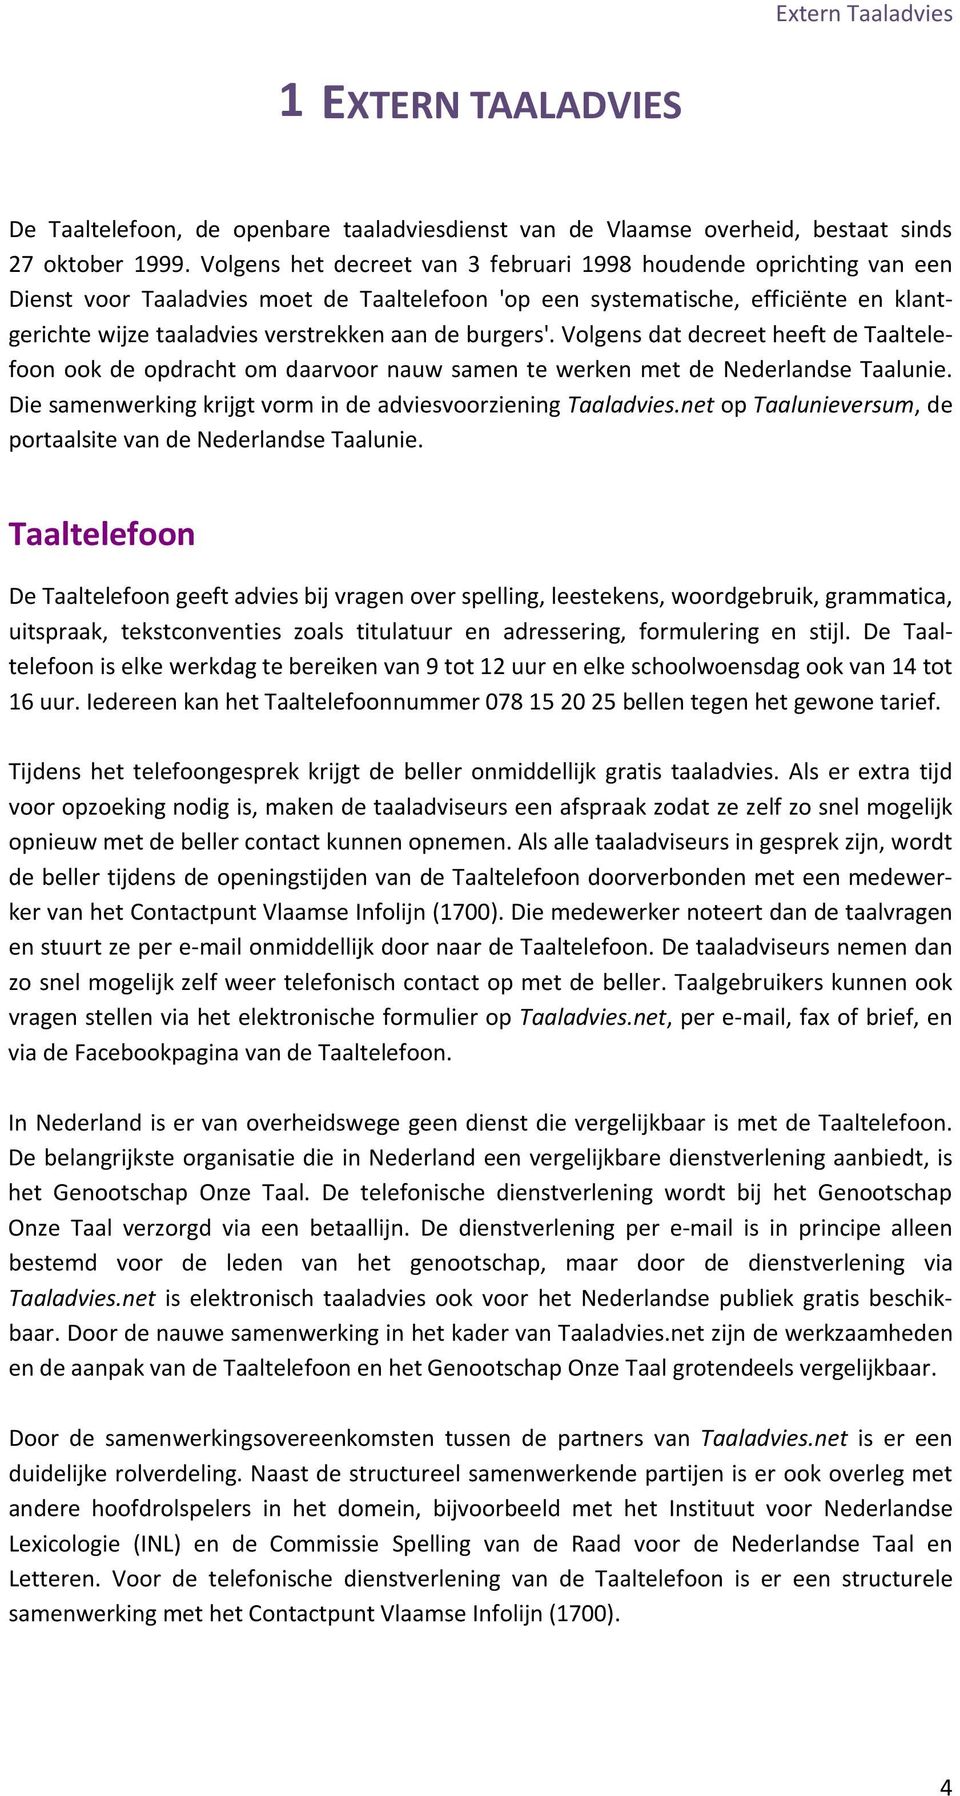 burgers'. Volgens dat decreet heeft de Taaltelefoon ook de opdracht om daarvoor nauw samen te werken met de Nederlandse Taalunie. Die samenwerking krijgt vorm in de adviesvoorziening Taaladvies.